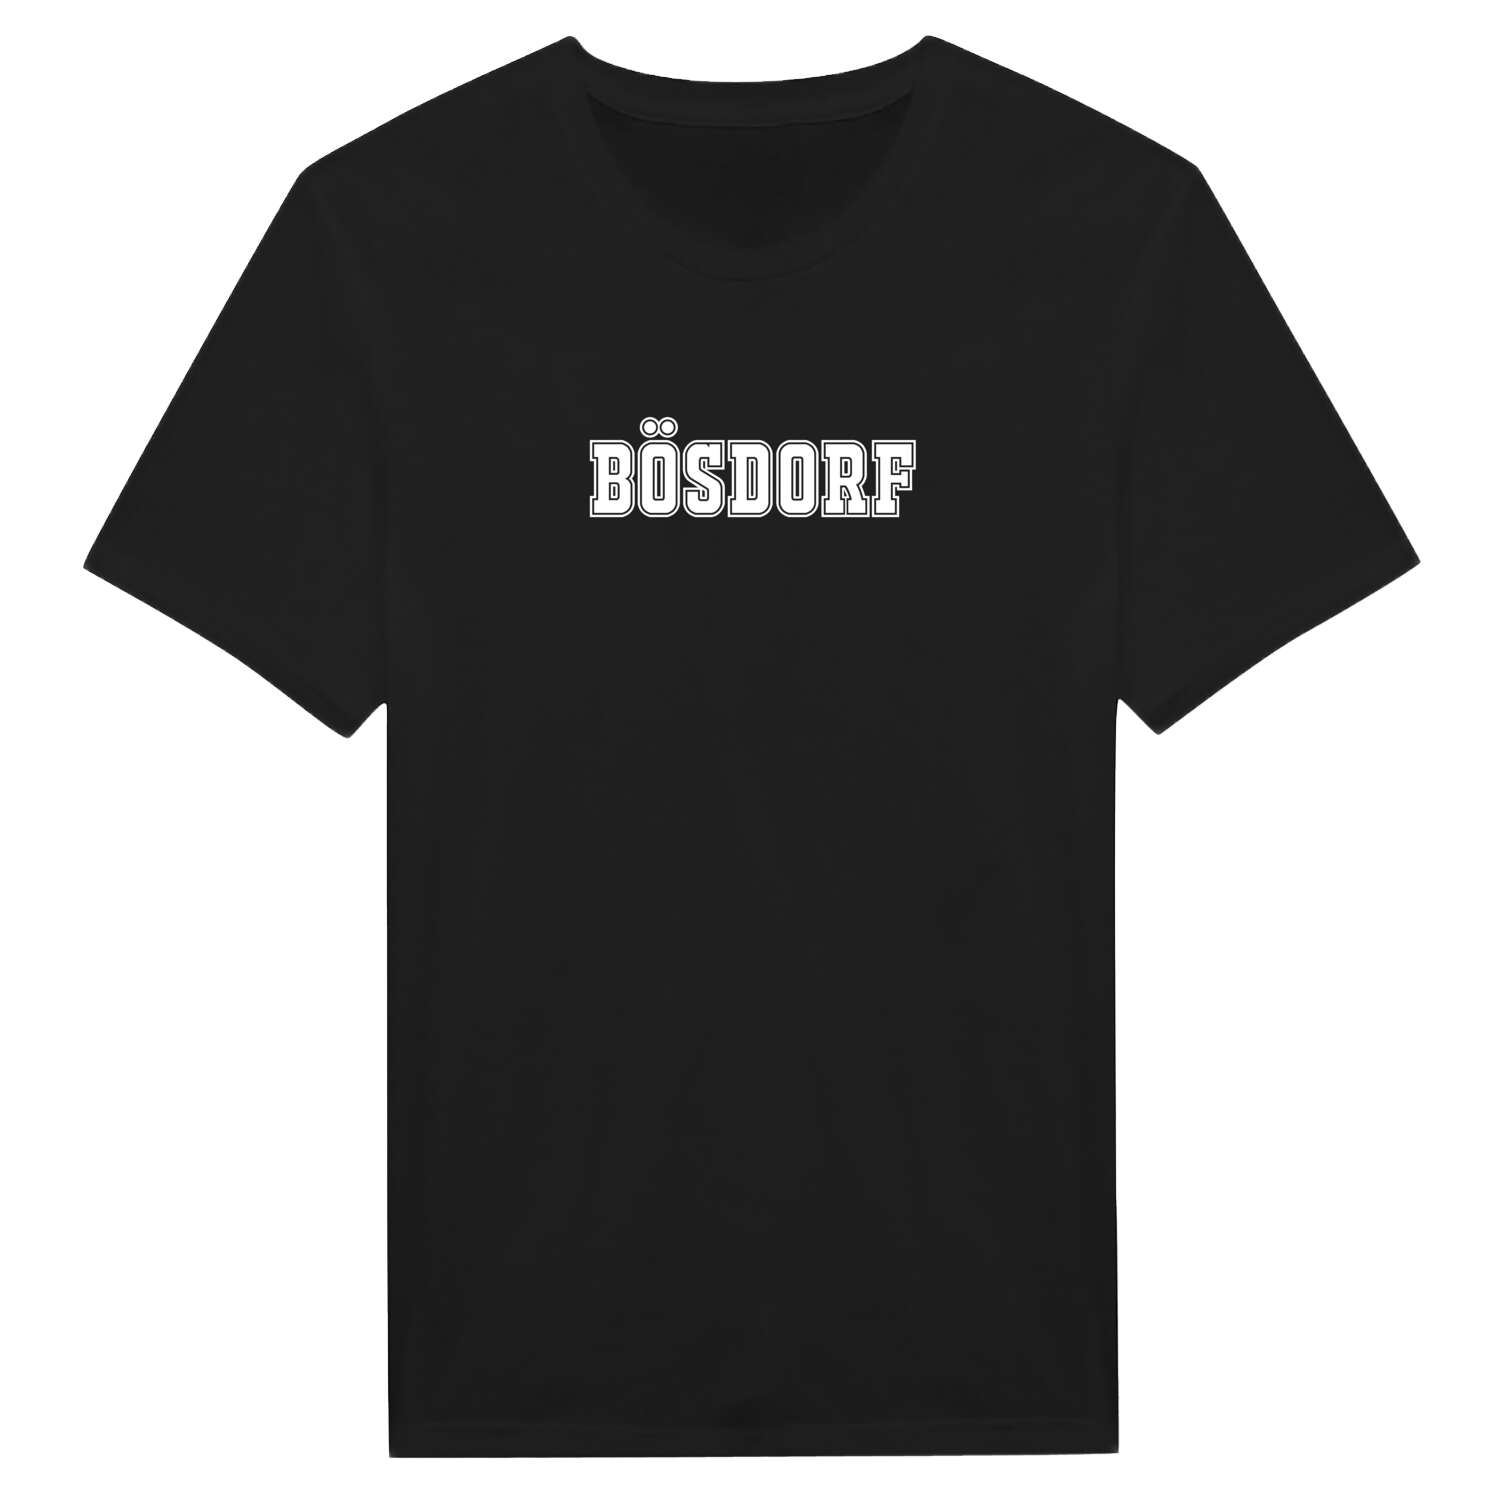 Bösdorf T-Shirt »Classic«